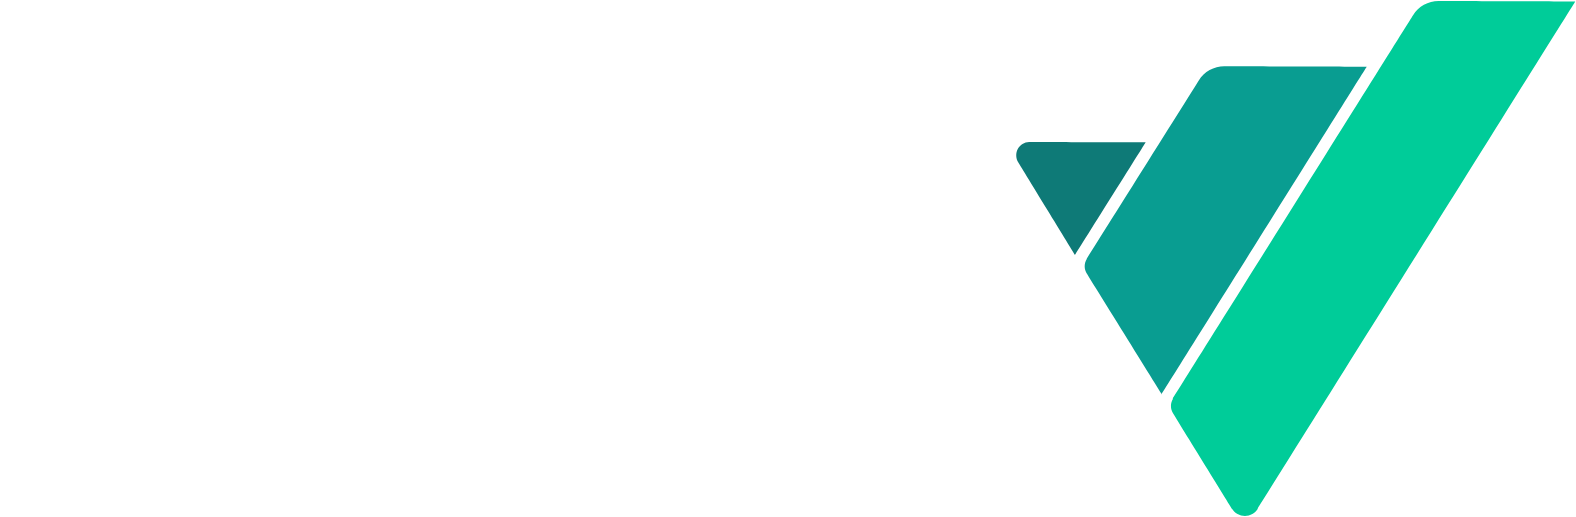 Virtu Financial
 logo large for dark backgrounds (transparent PNG)